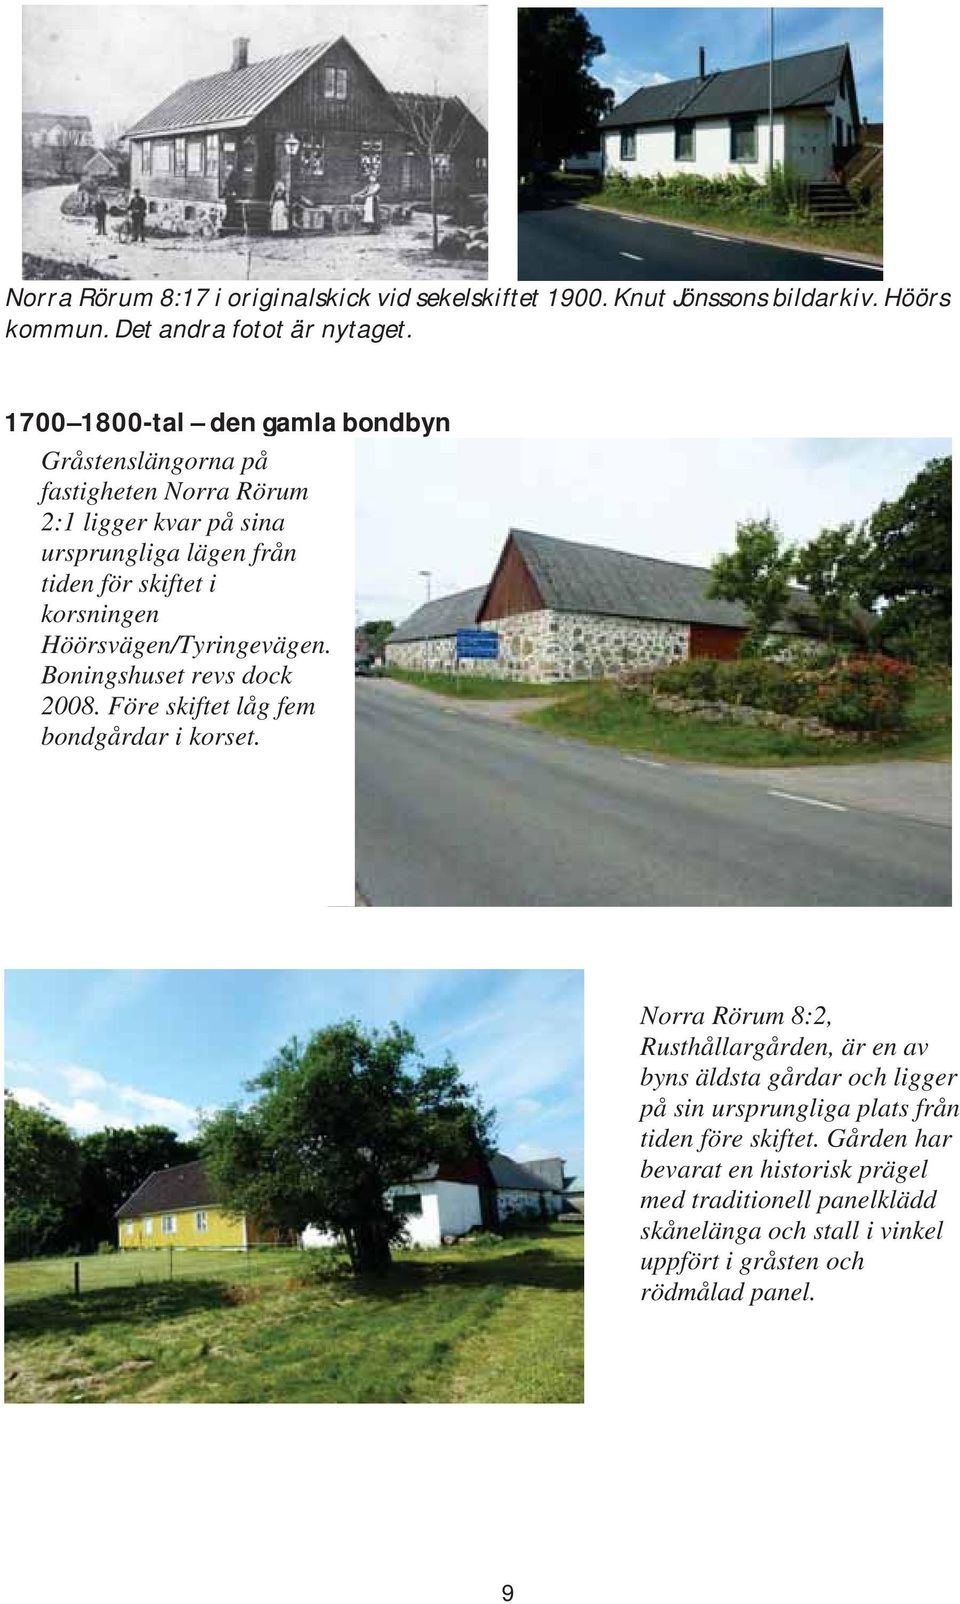 Höörsvägen/Tyringevägen. Boningshuset revs dock 2008. Före skiftet låg fem bondgårdar i korset.